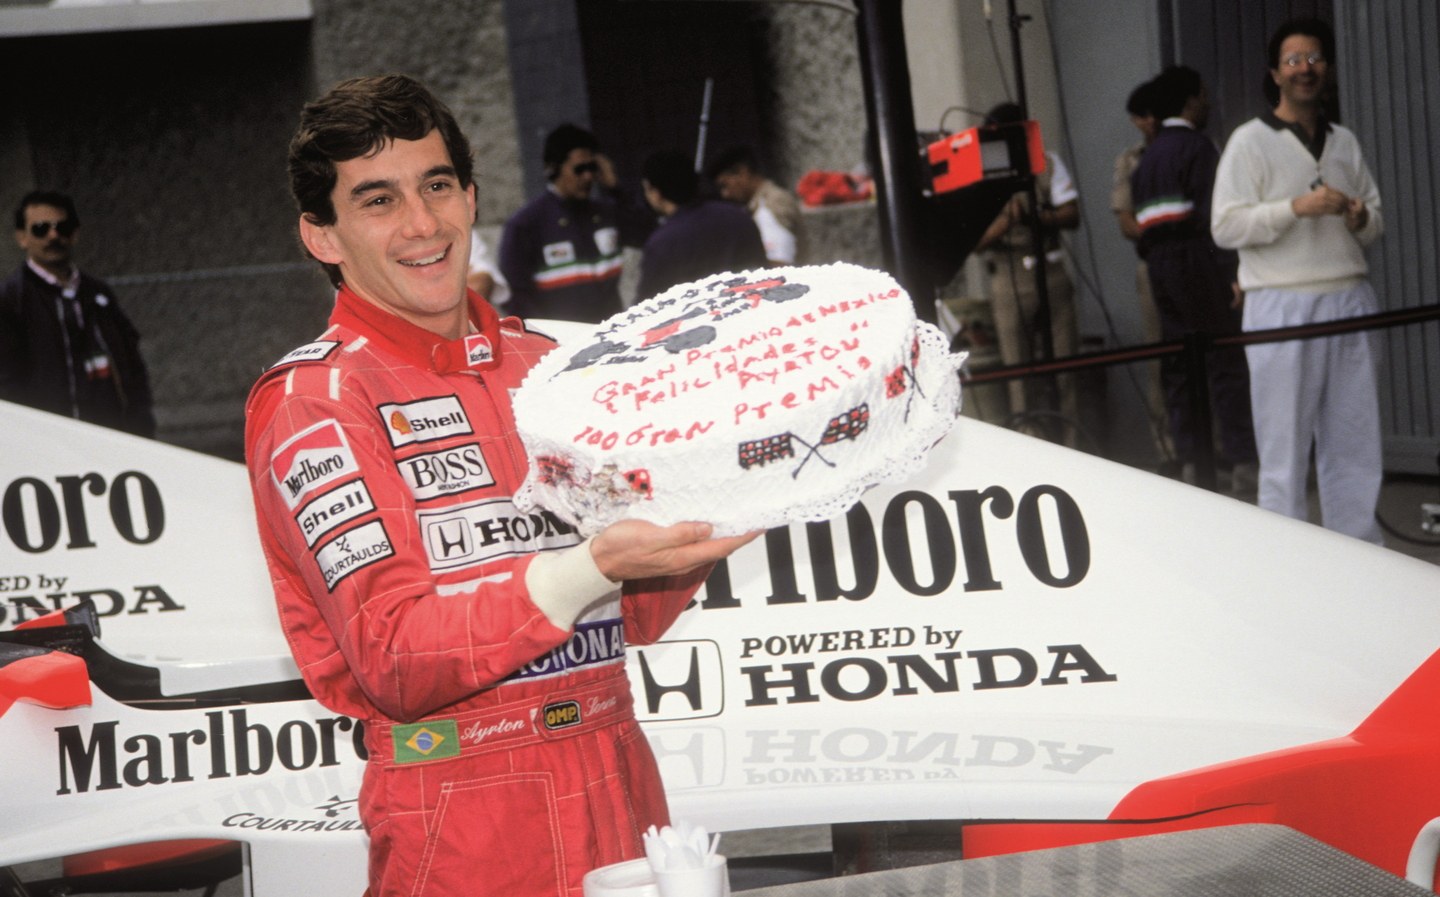 Ayrton Senna at the 1990 Mexico GP